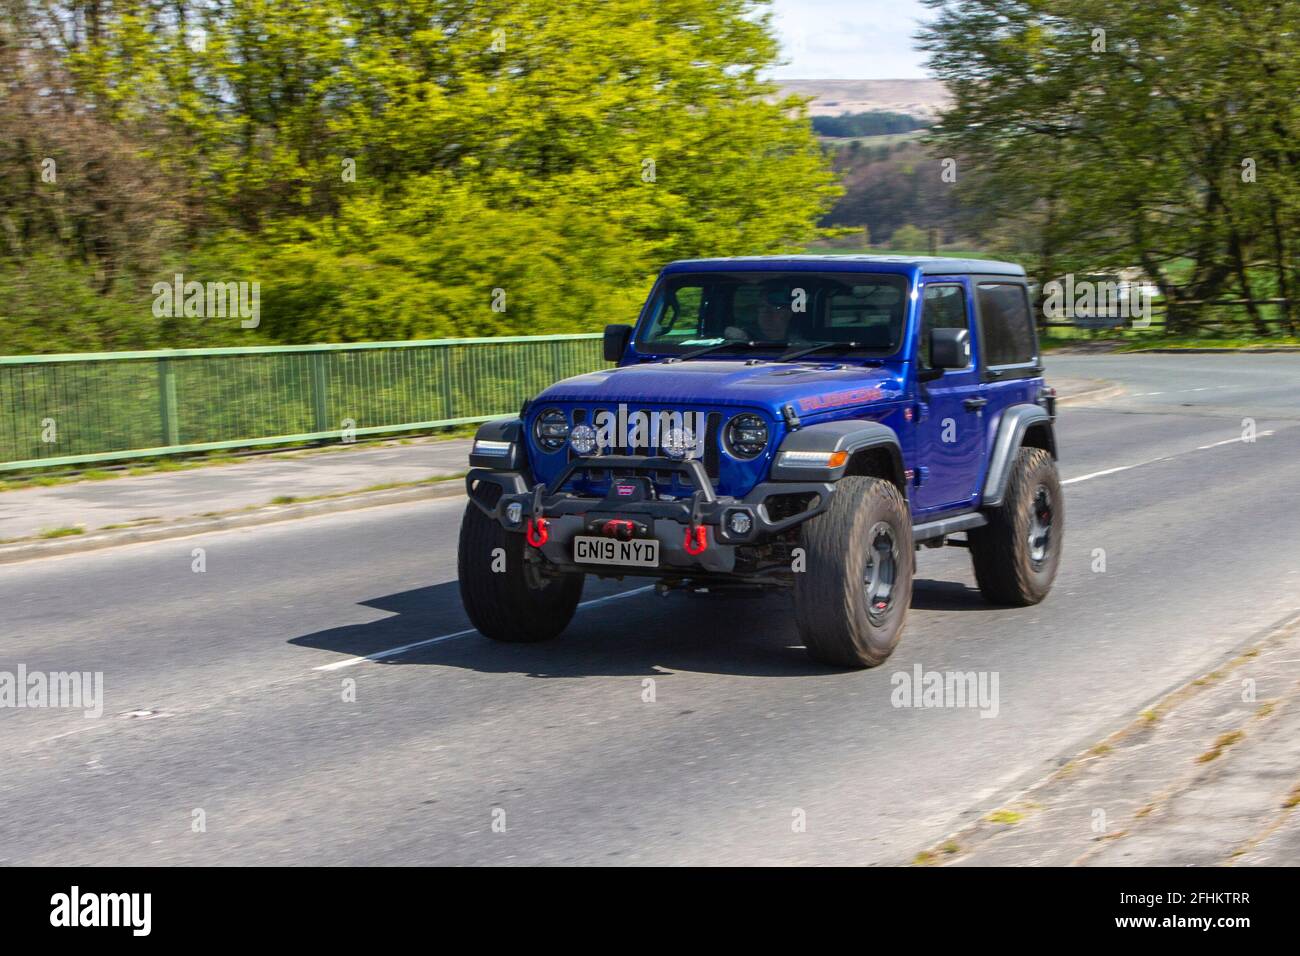 2019 Blue Jeep Wrangler Rubicon 4x4 Offroad, Fahrzeuge bewegen, Autos, Fahrzeug fahren auf britischen Straßen, Motoren, Fahren auf der englischen Autobahn M6 Straßennetz Stockfoto